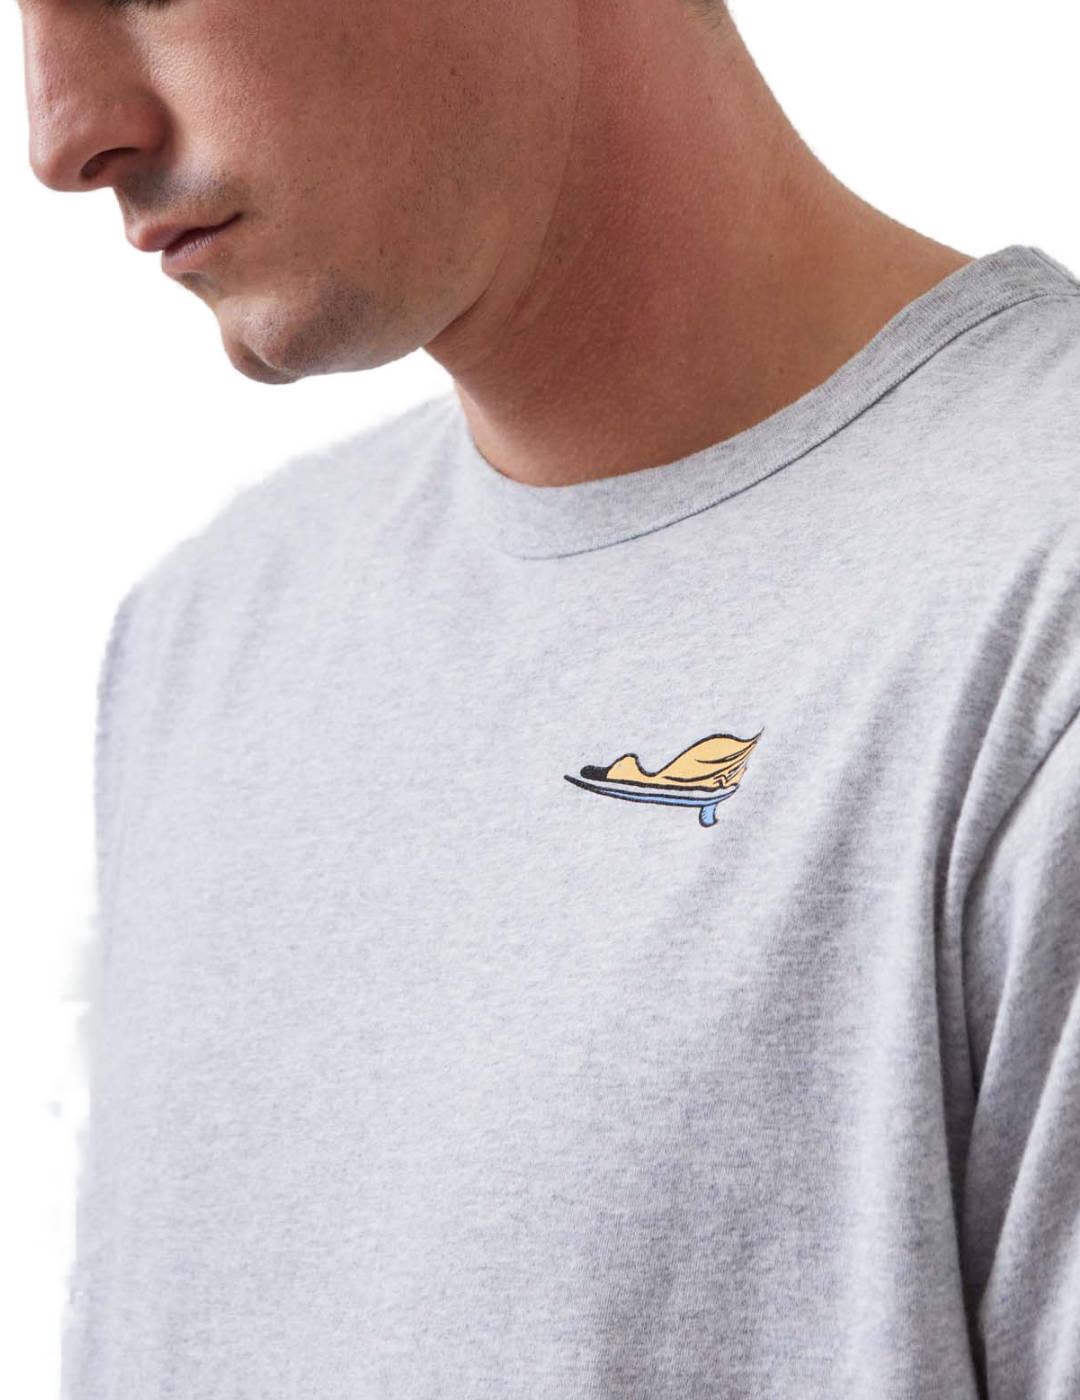 Camiseta Altonadock gris dibujo pato manga corta para hombre